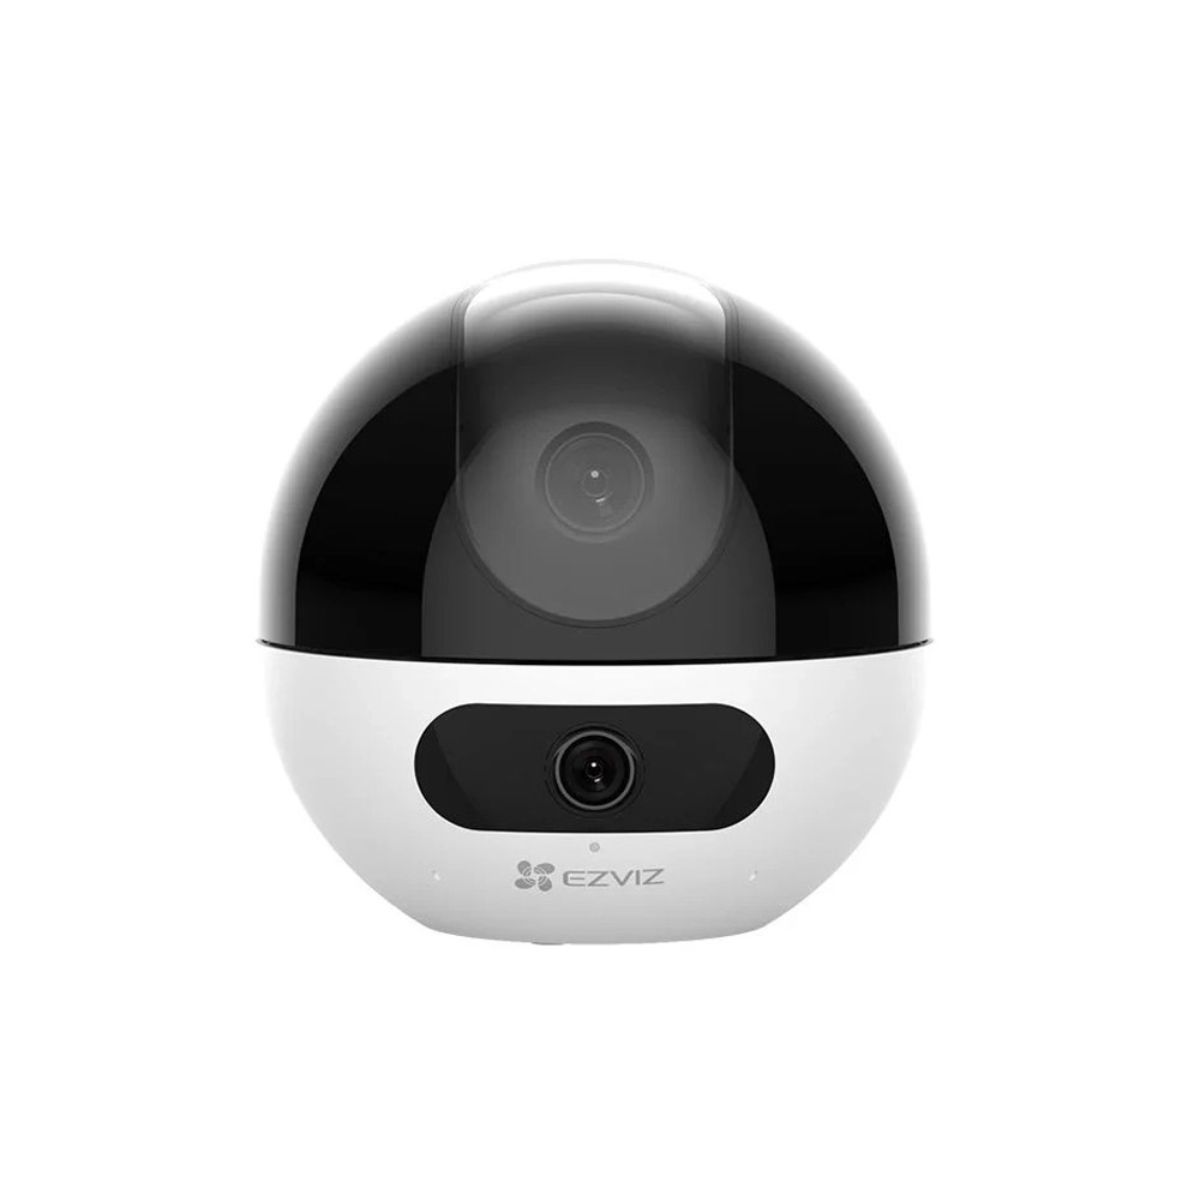 Camera Ezviz C7 ống kính kép 8Mp (4MP+4MP) wifi, đàm thoại hai chiều giơ 2 ngón tay, theo dõi chuyển động 